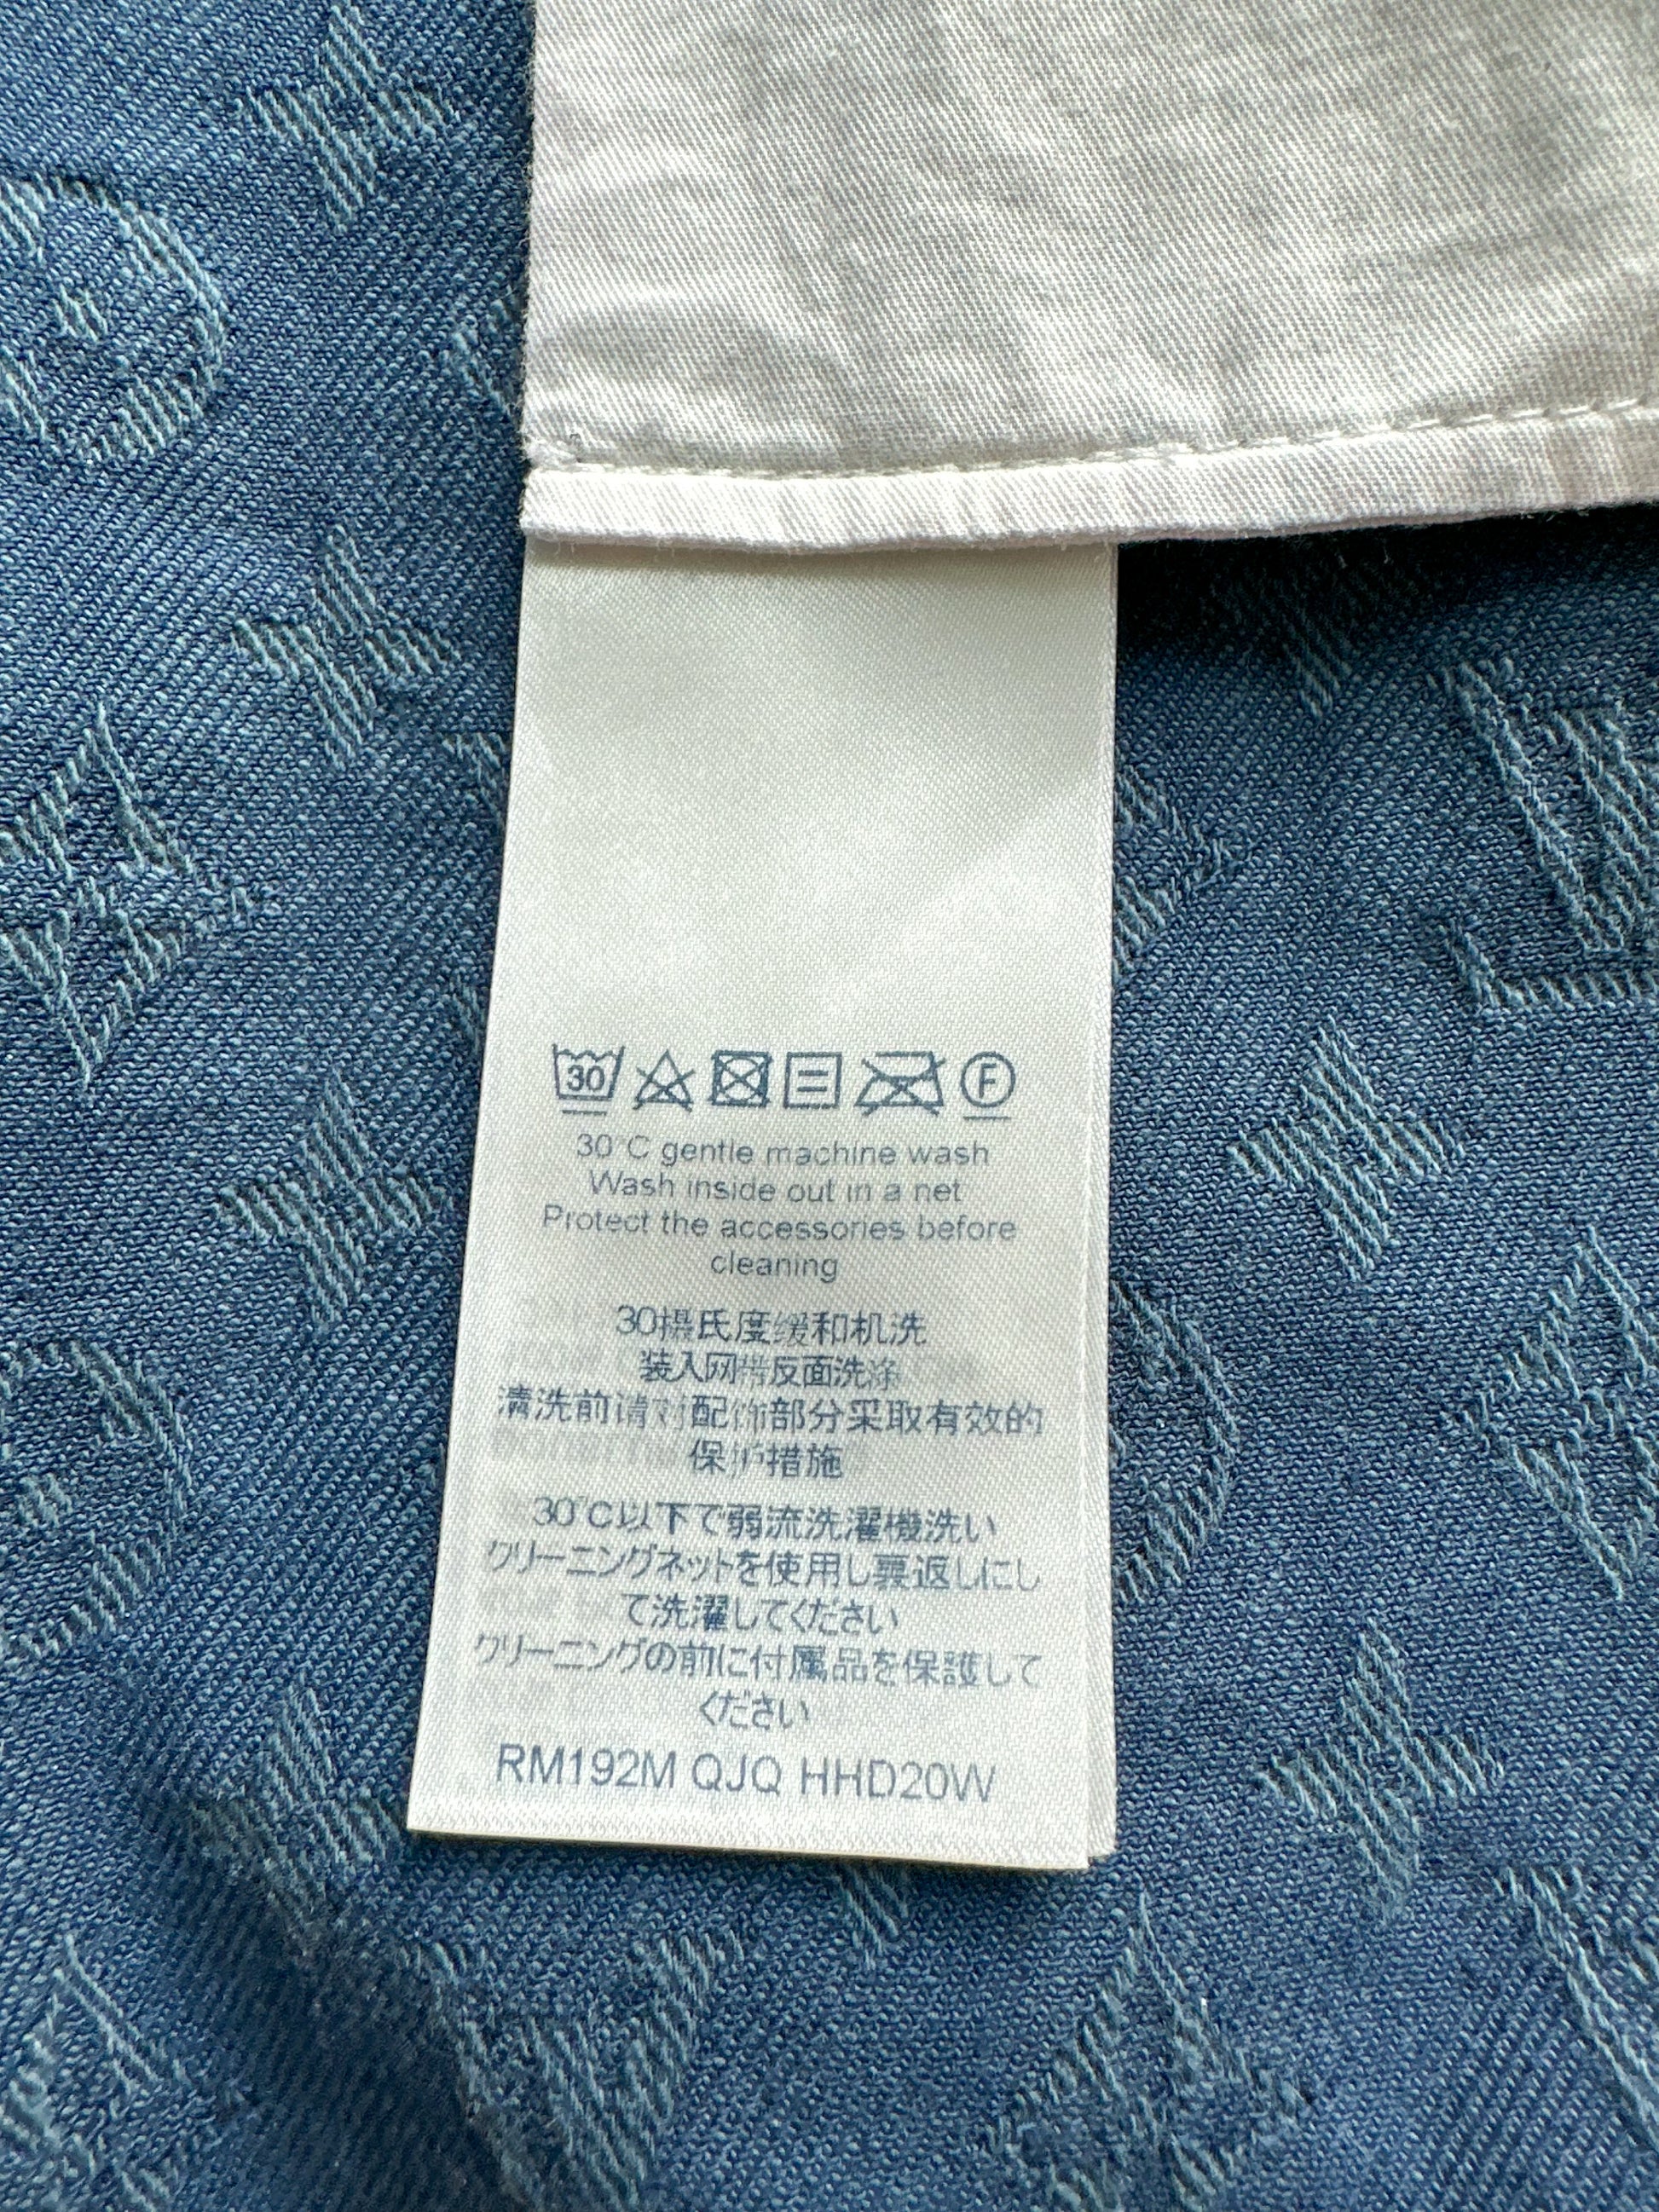 Slim jeans Louis Vuitton Blue size 36 FR in Denim - Jeans - 18072885